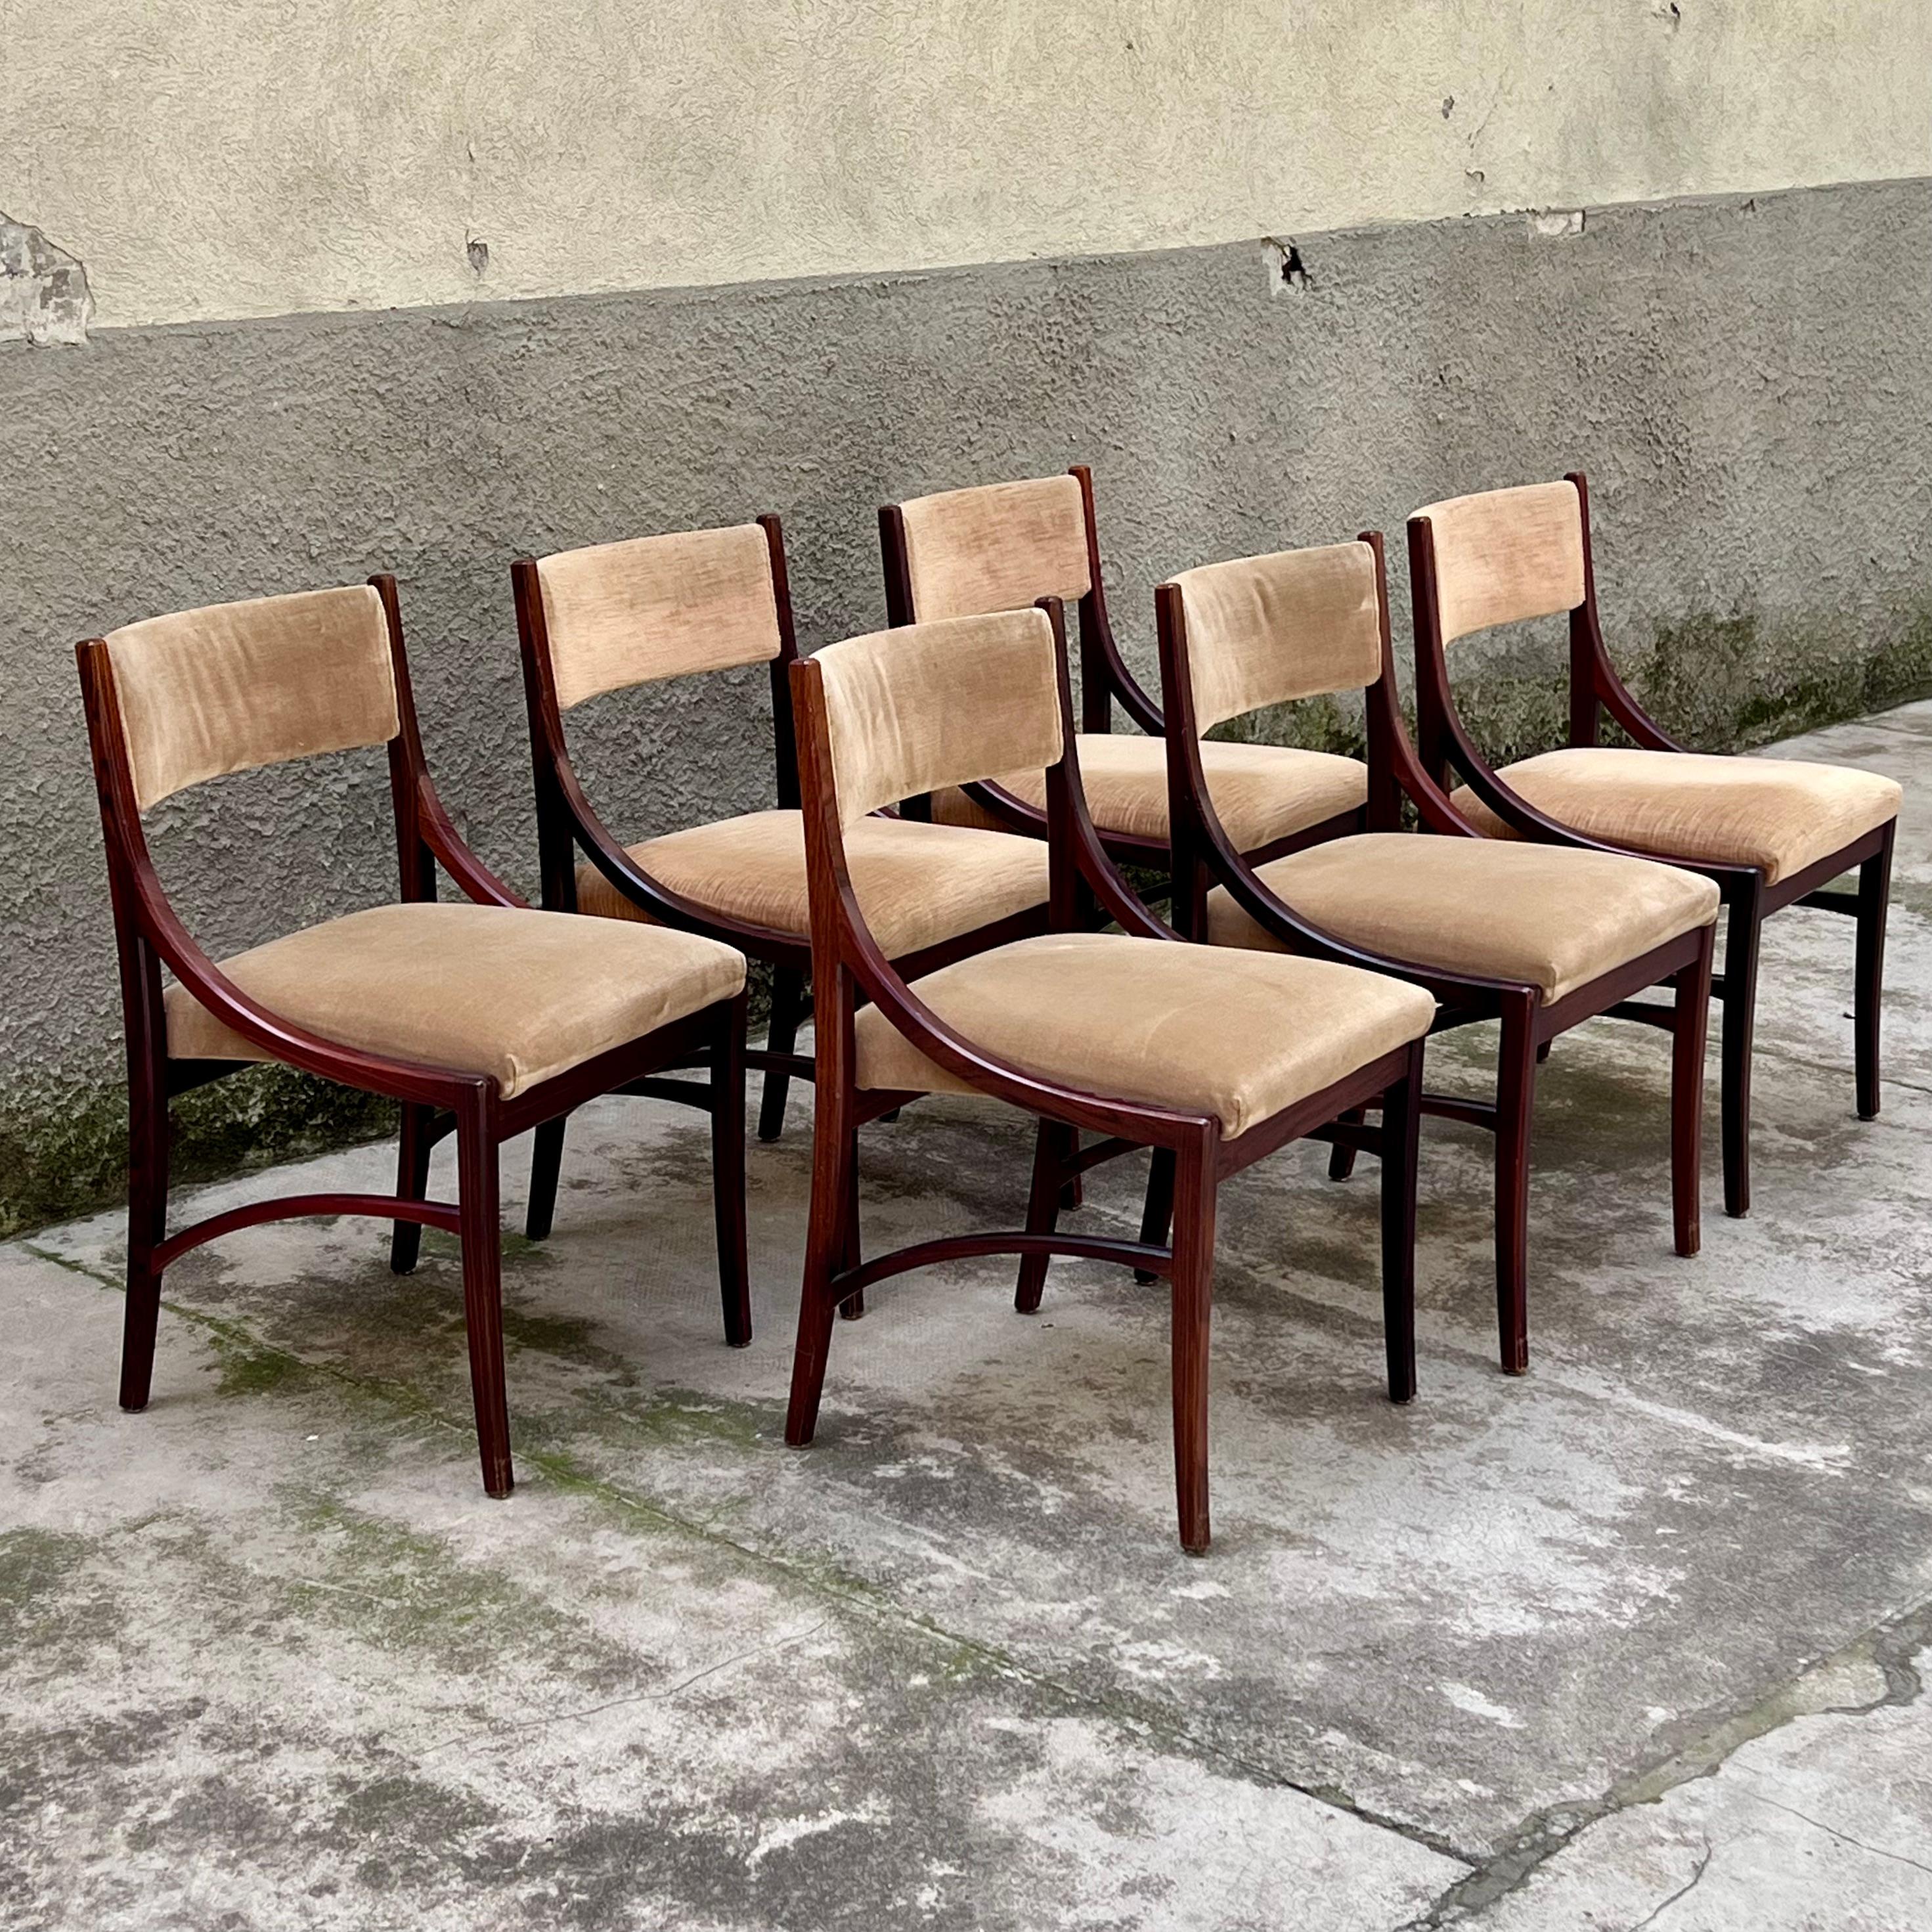 Ein wunderschönes Set von sechs Stühlen aus elegantem Mahagoni und komfortablem, haselnussfarbenem Samt, die aus der Feder von Ico Parisi stammen und seit den 1960er Jahren von der renommierten Firma Cassina hergestellt werden, die vielleicht am